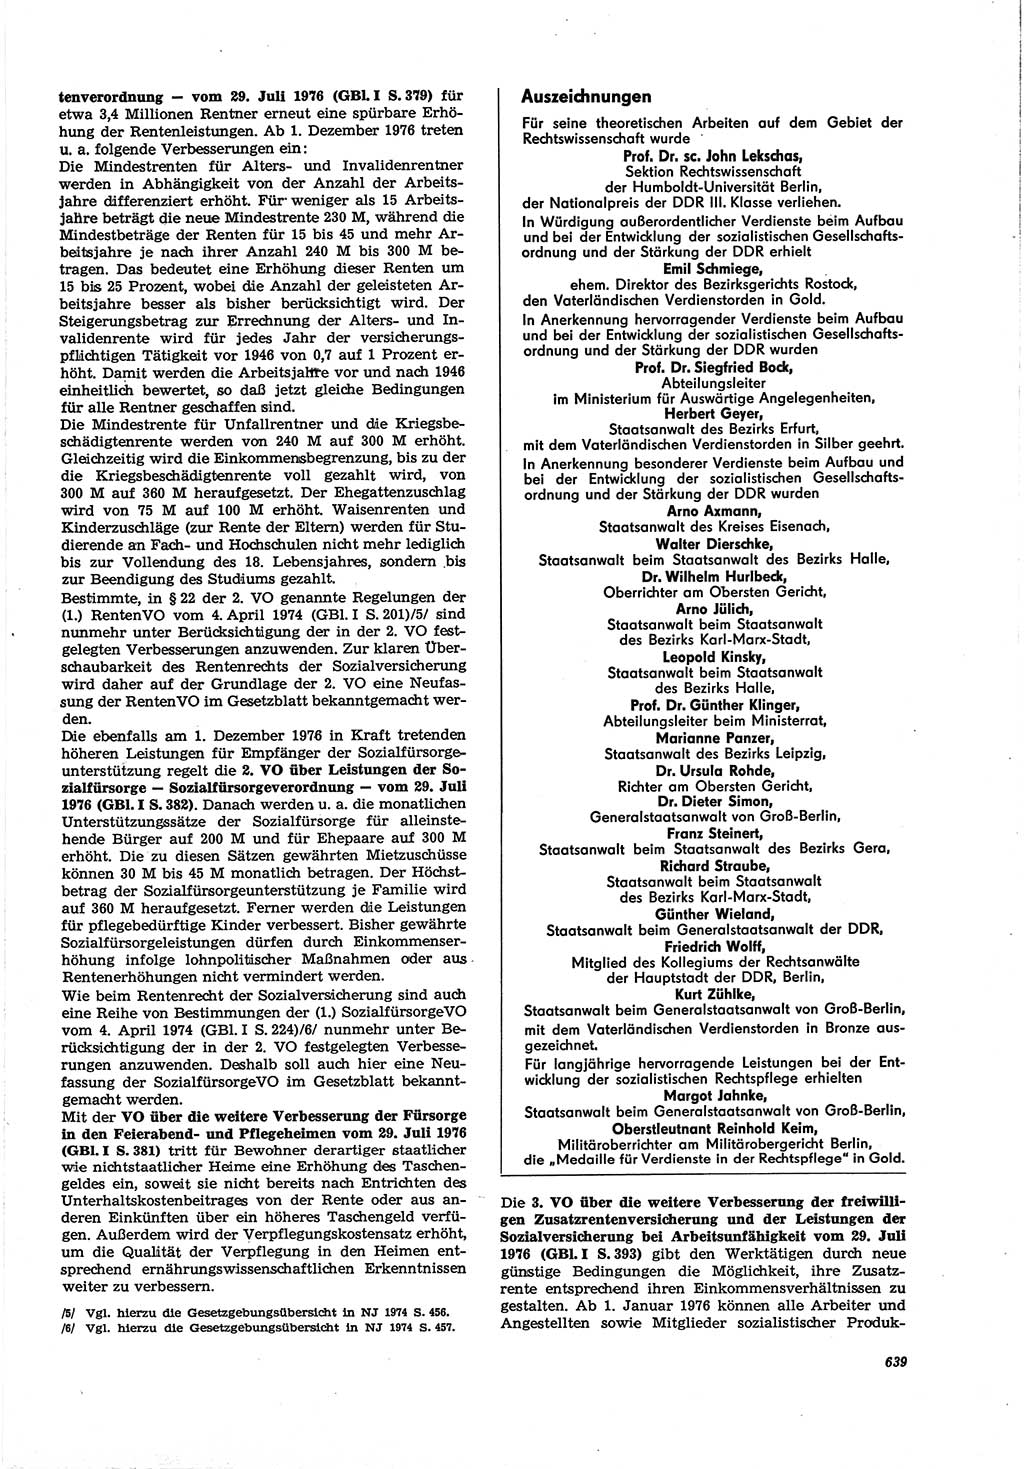 Neue Justiz (NJ), Zeitschrift für Recht und Rechtswissenschaft [Deutsche Demokratische Republik (DDR)], 30. Jahrgang 1976, Seite 639 (NJ DDR 1976, S. 639)